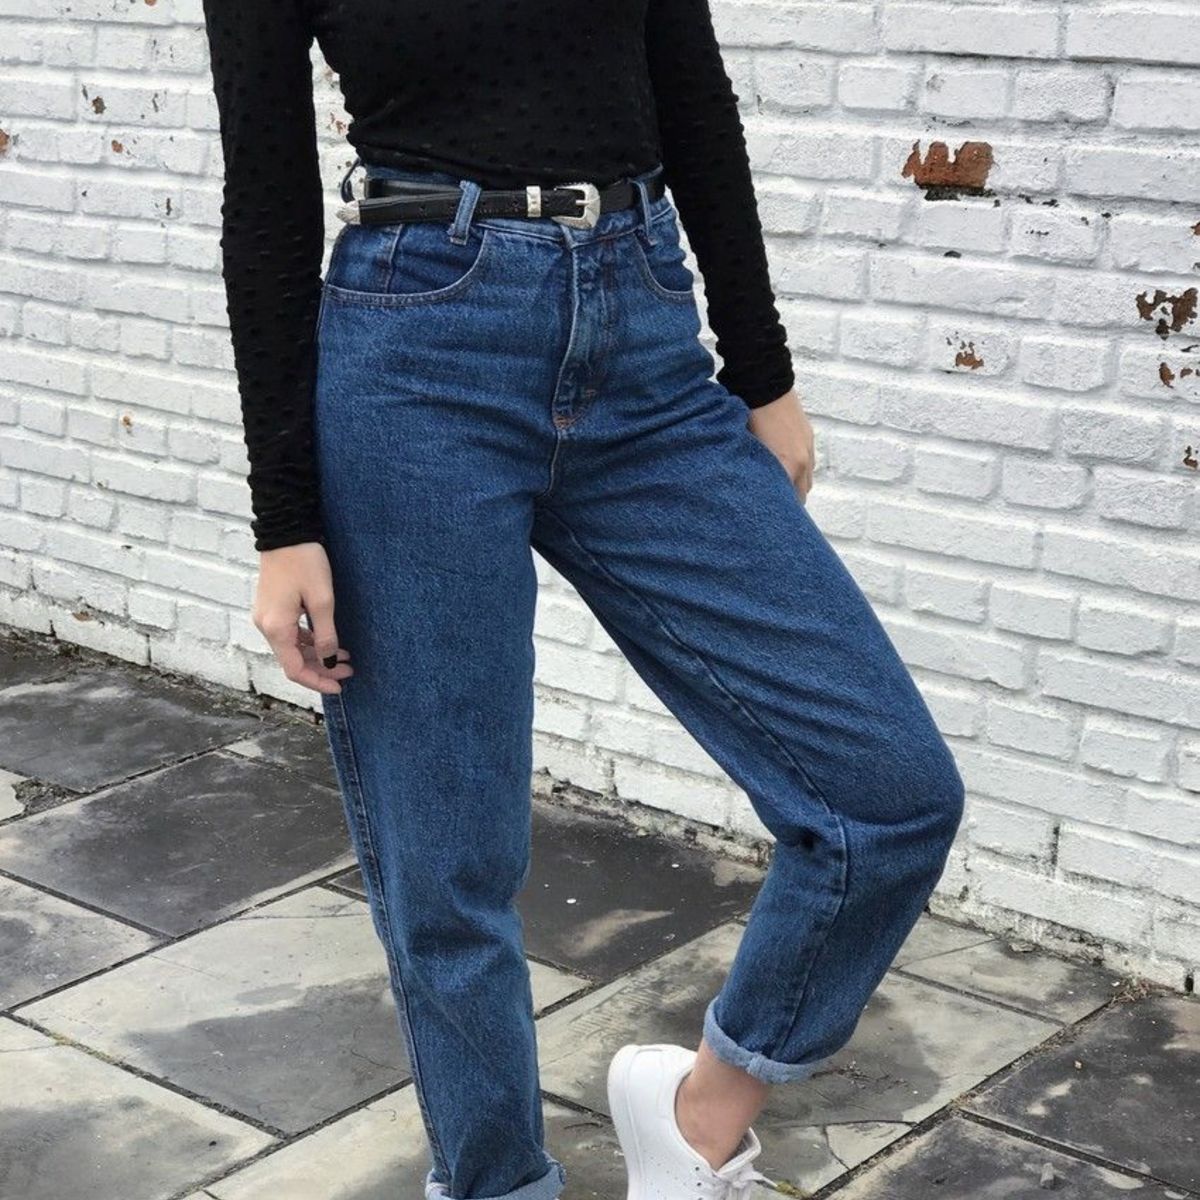 Contrapartida Traición cuadrado Vaquero busca dueña: 9 jeans que tienes que conocer - Lookiero Blog